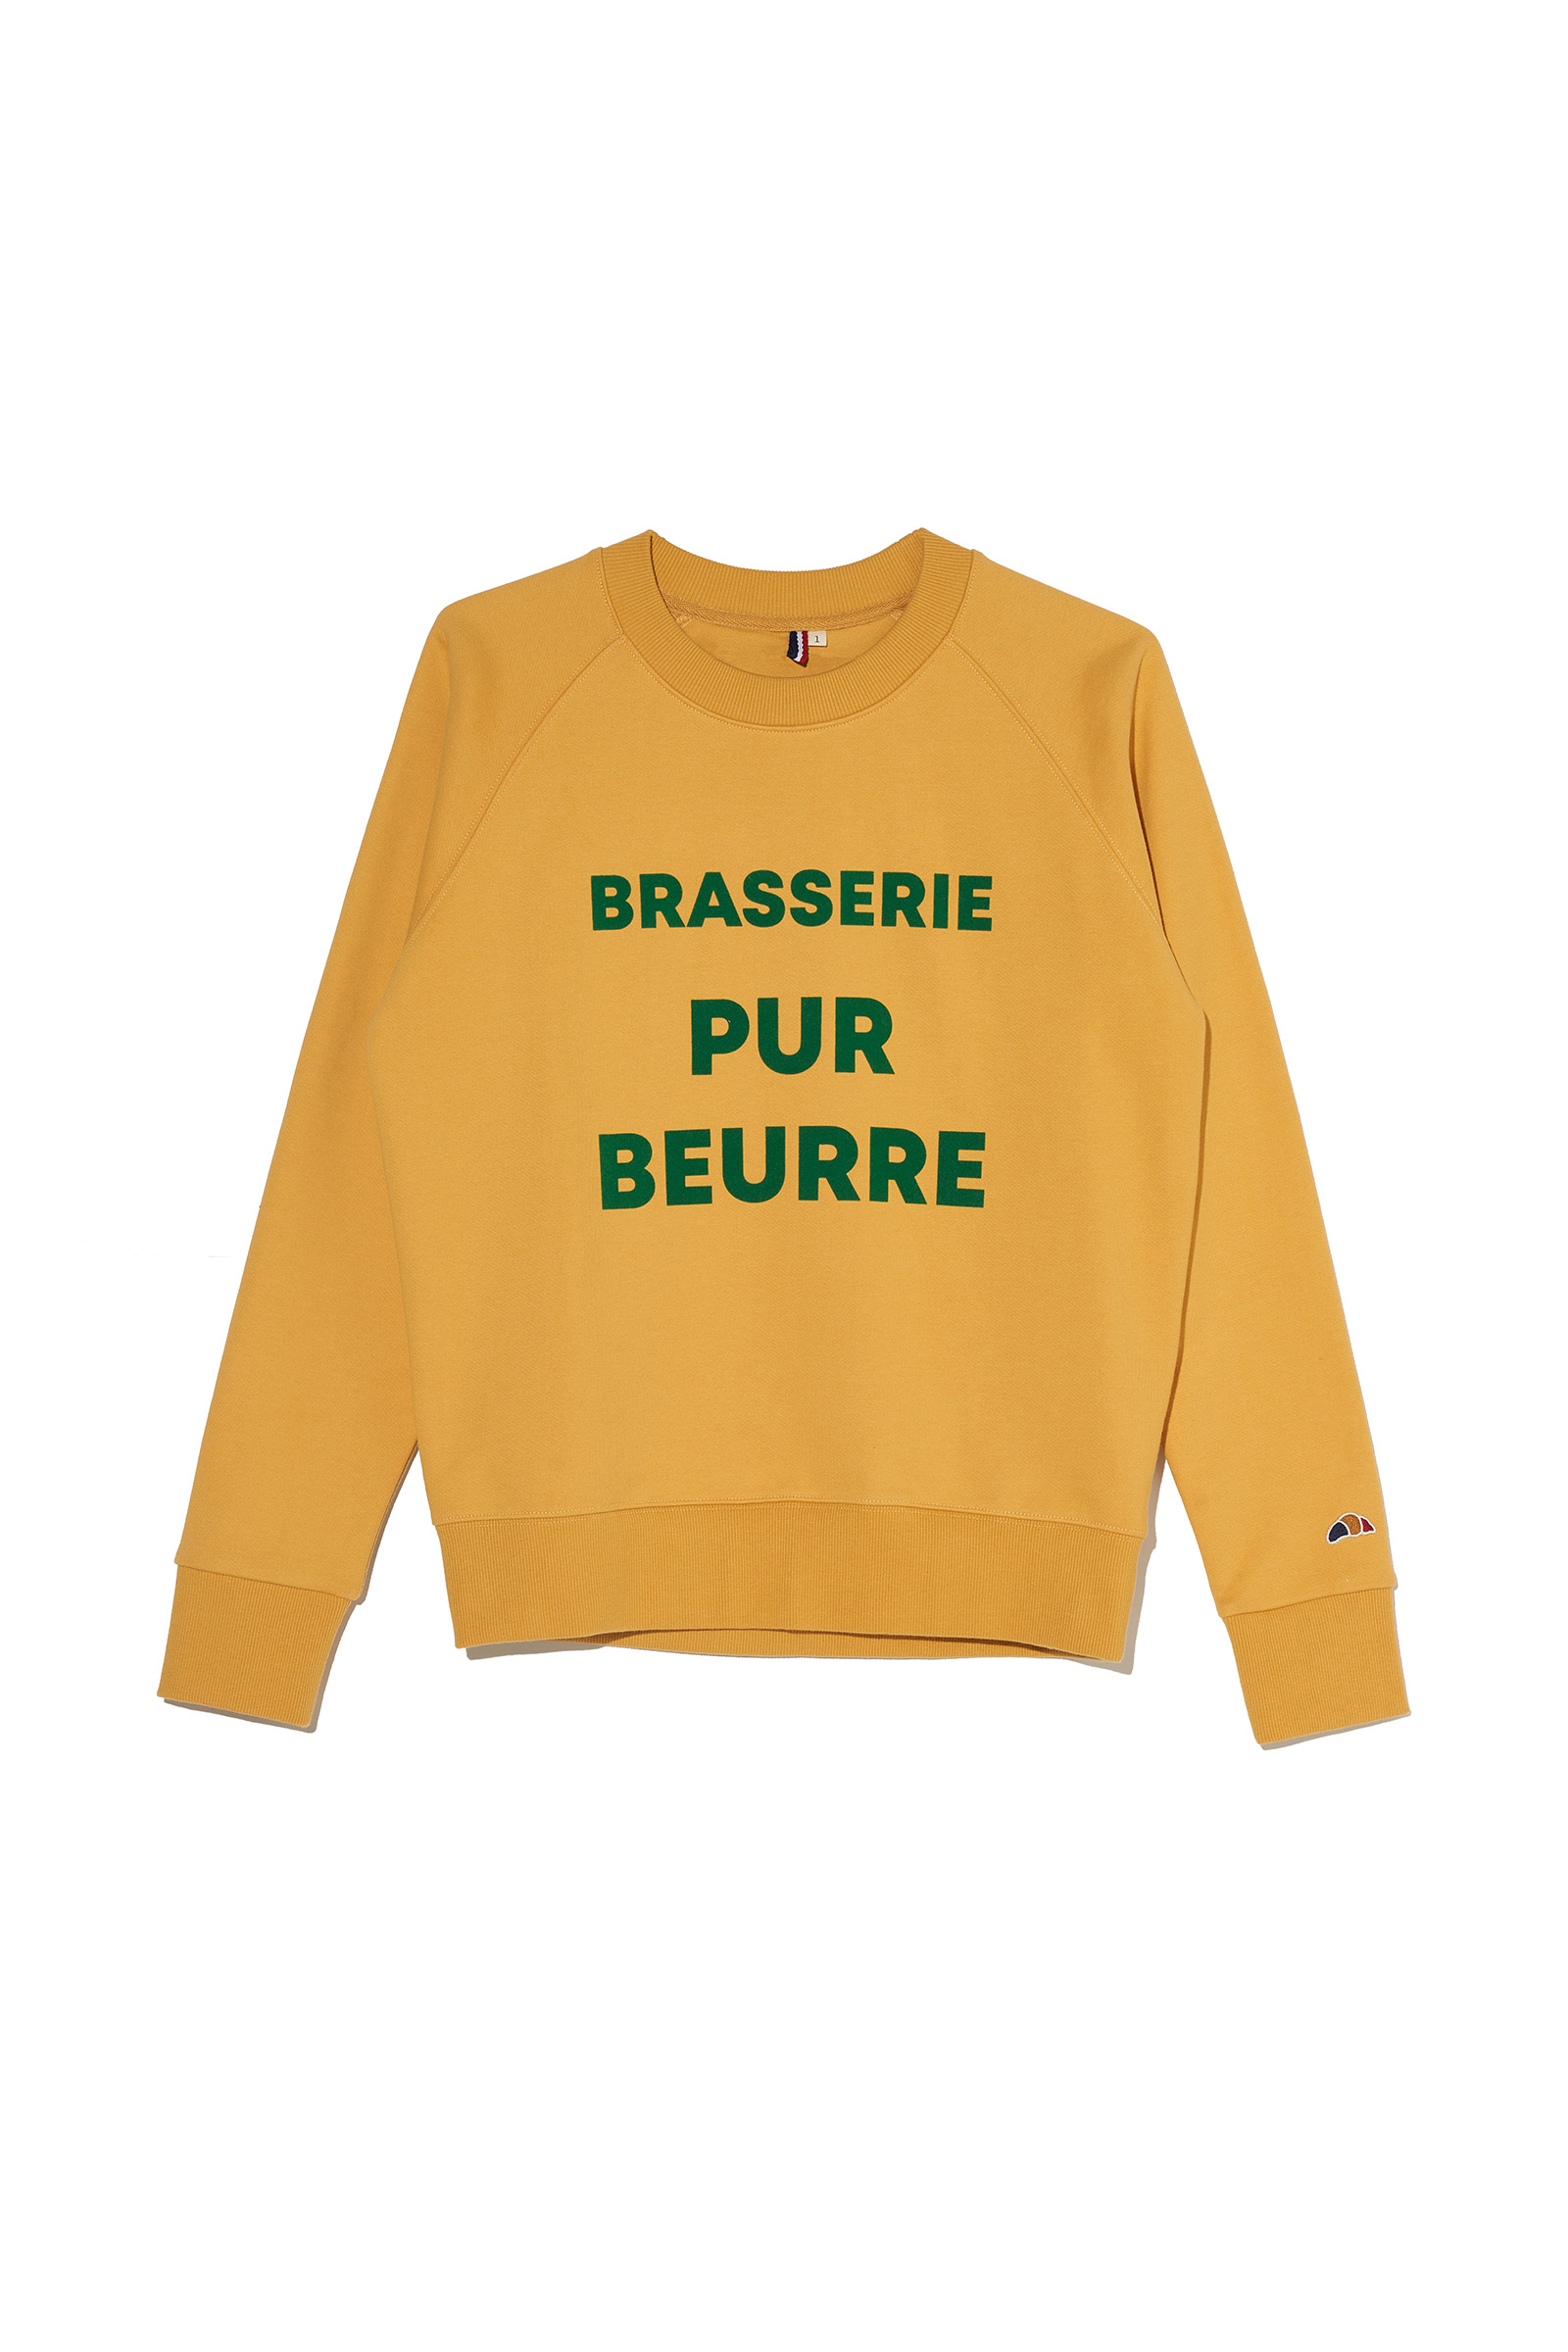 ep.4 Pure Beurre Sweatshirts (Yellow)